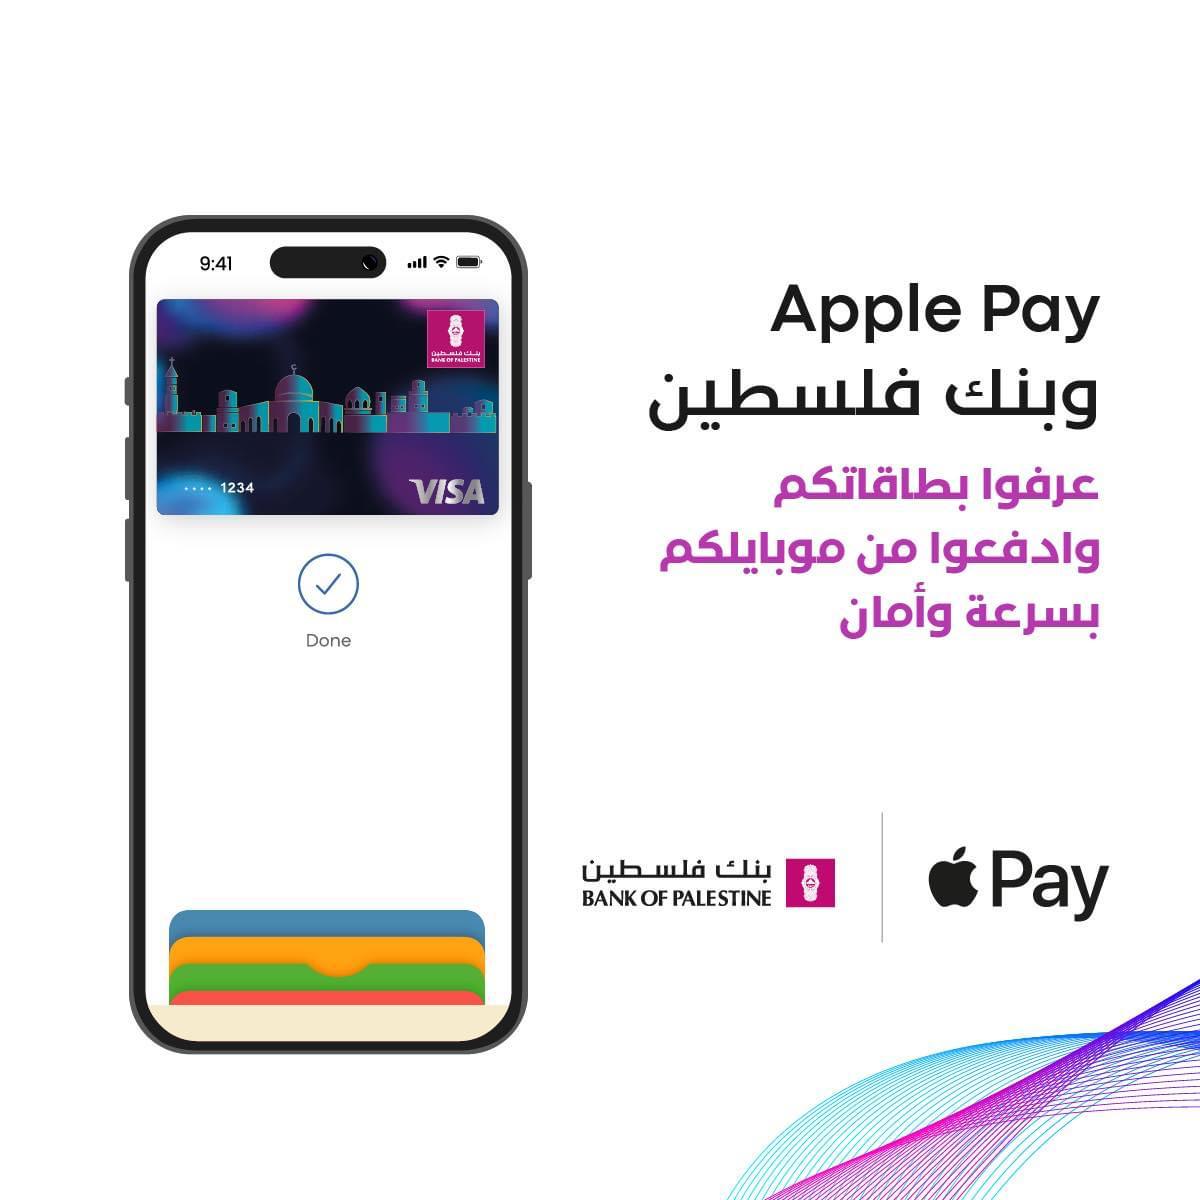 بنك فلسطين يطلق خدمة Apple Pay العالمية للدفع الإلكتروني التي تتميز بدرجة عالية من الأمان والخصوصية